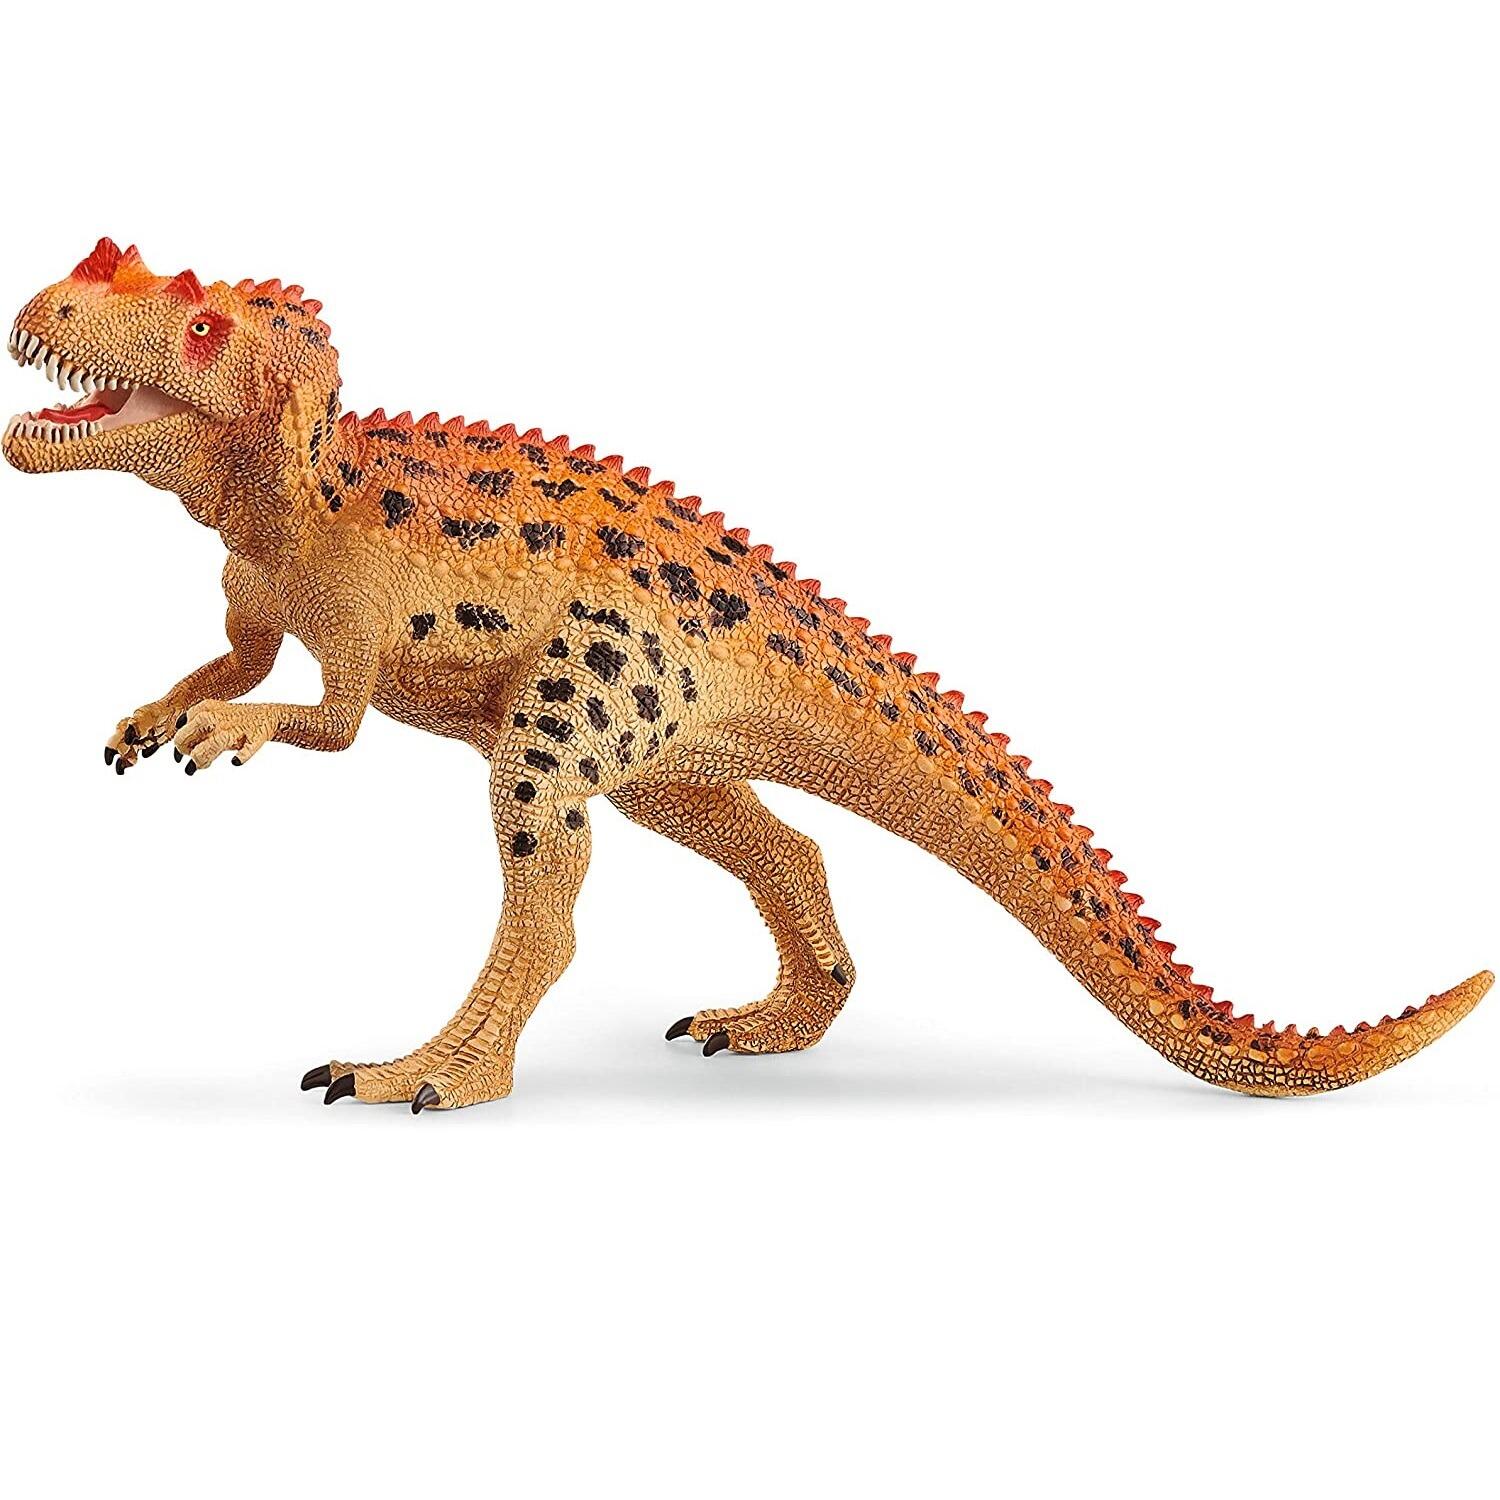 Schleich Dinosaurs Ceratosaurus